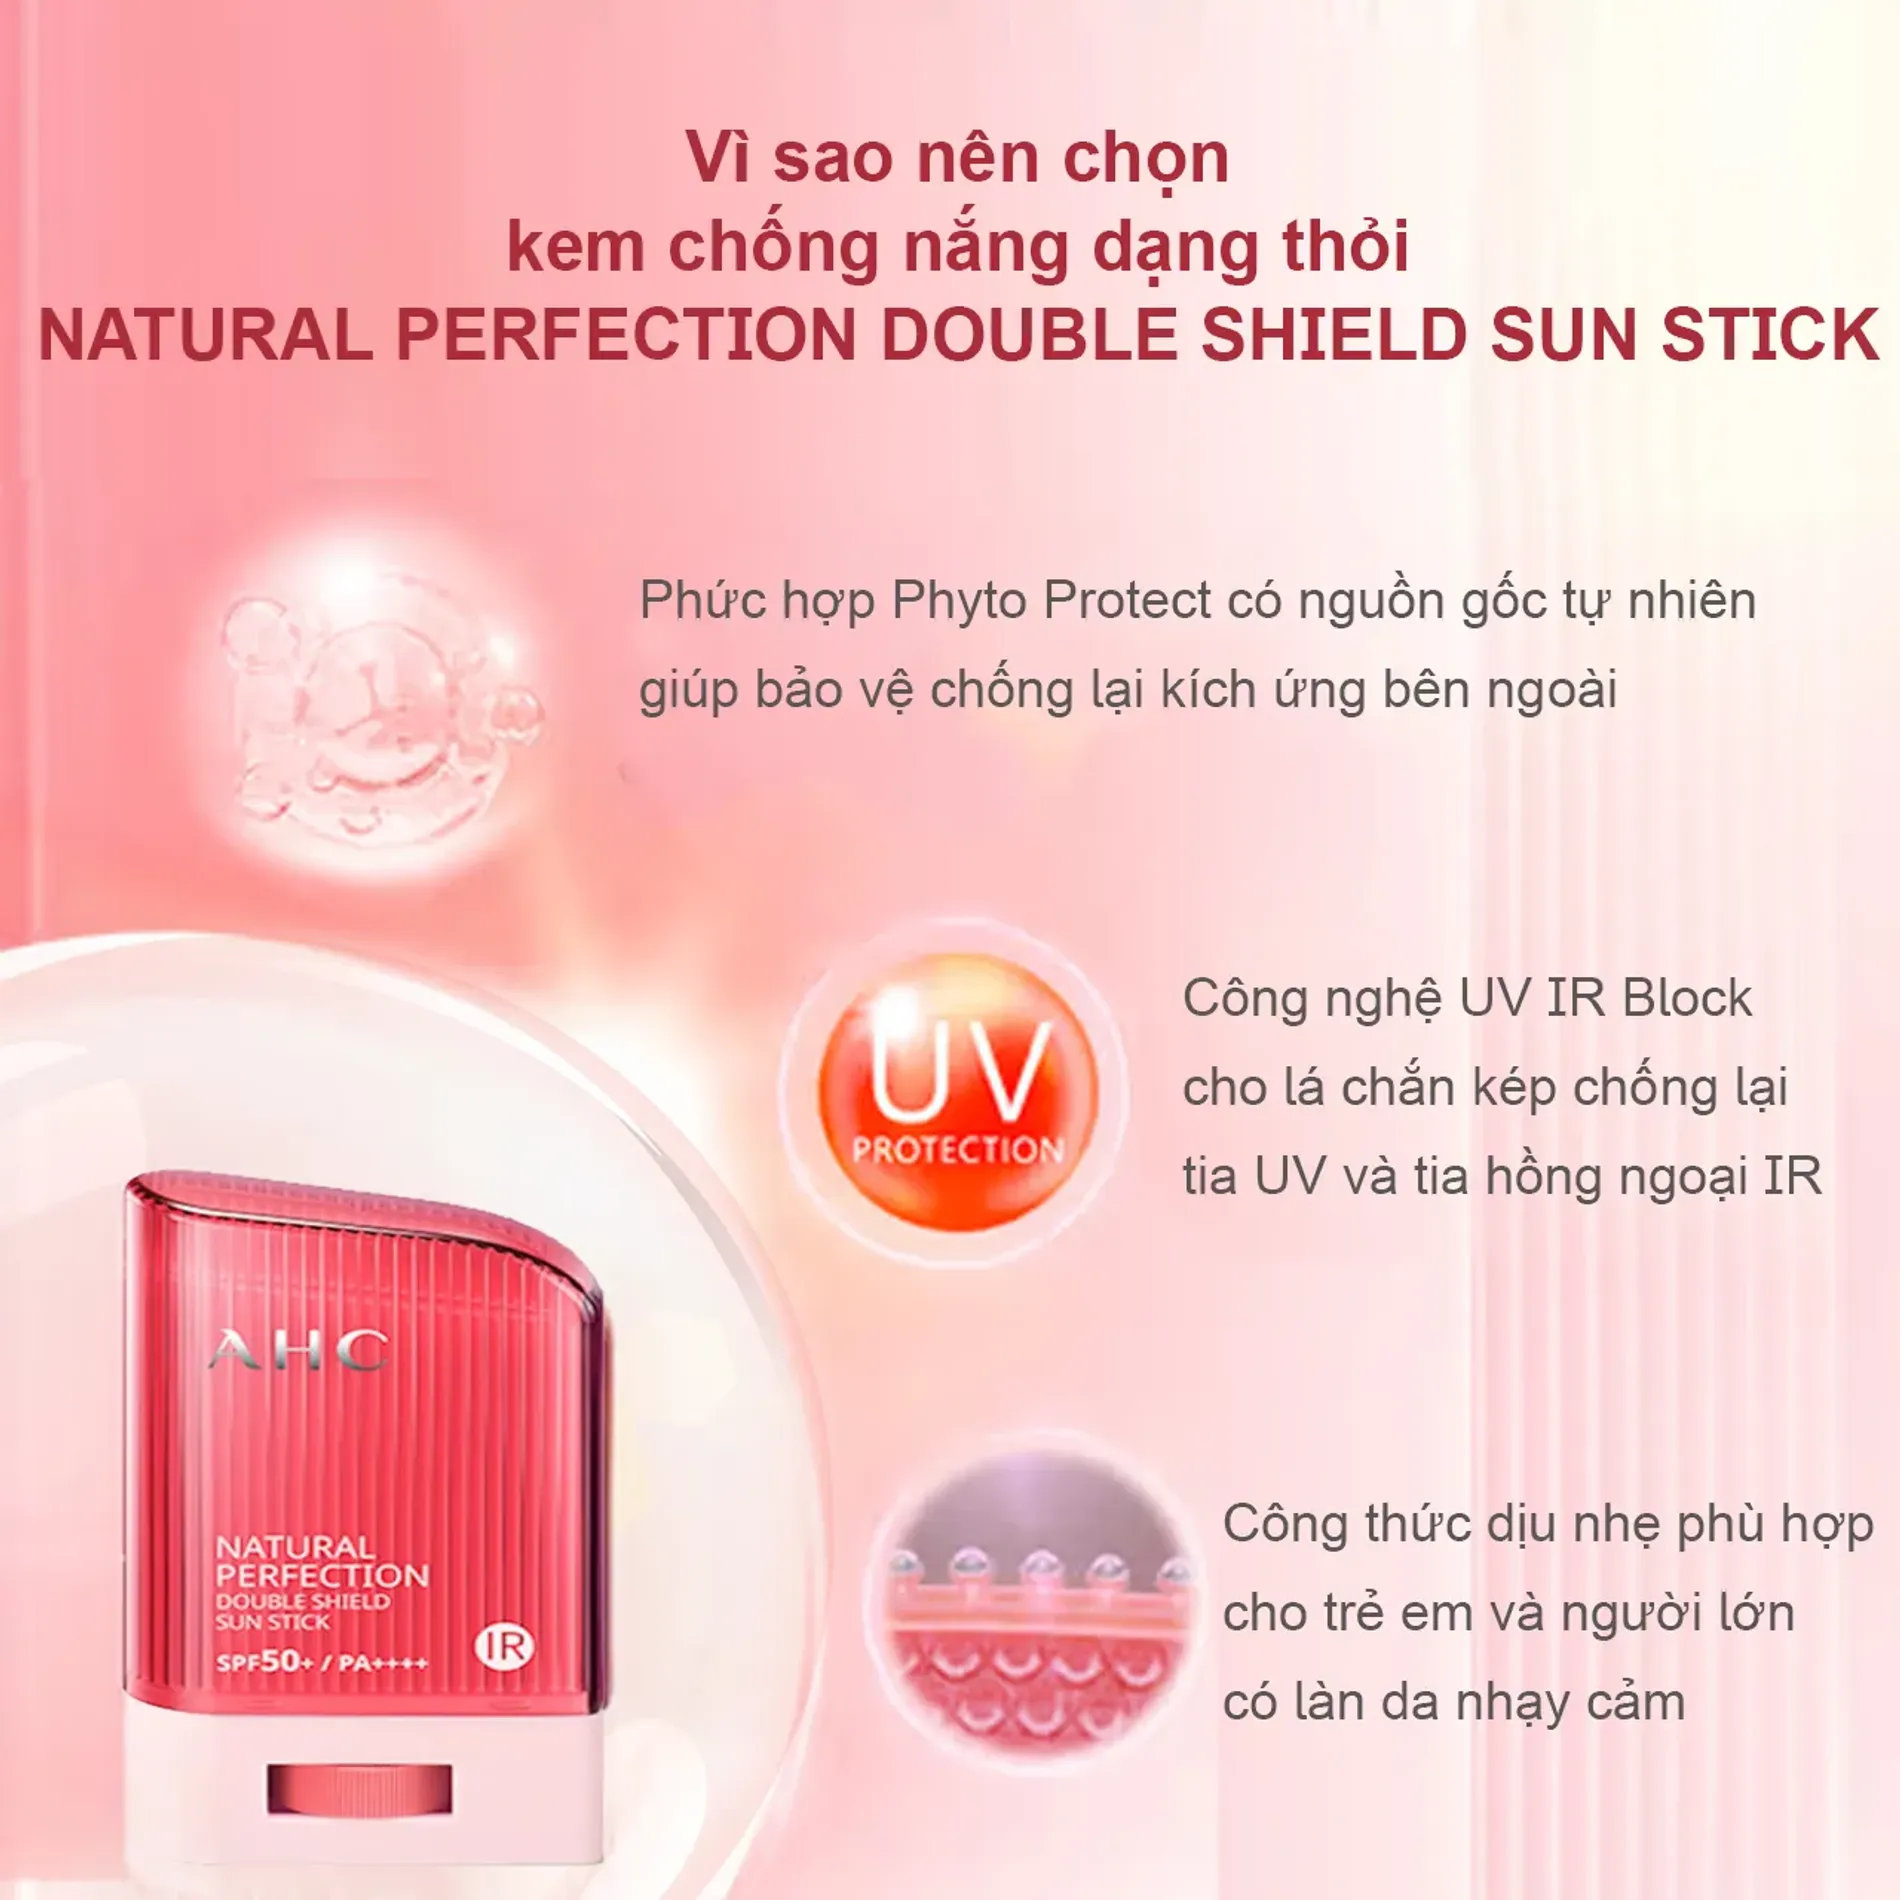 kem-chong-nang-dang-thoi-ahc-natural-perfection-double-shield-sun-stick-14g-5